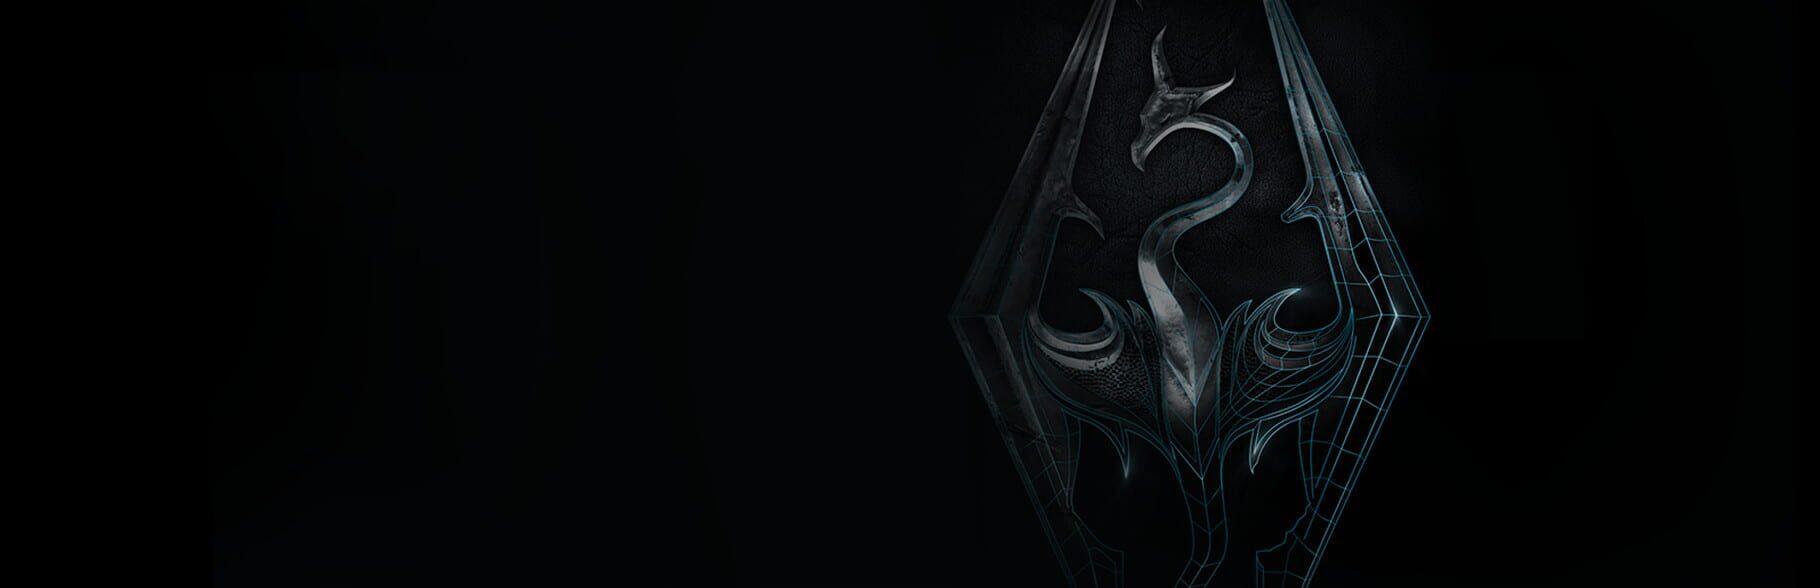 Artwork for The Elder Scrolls V: Skyrim VR